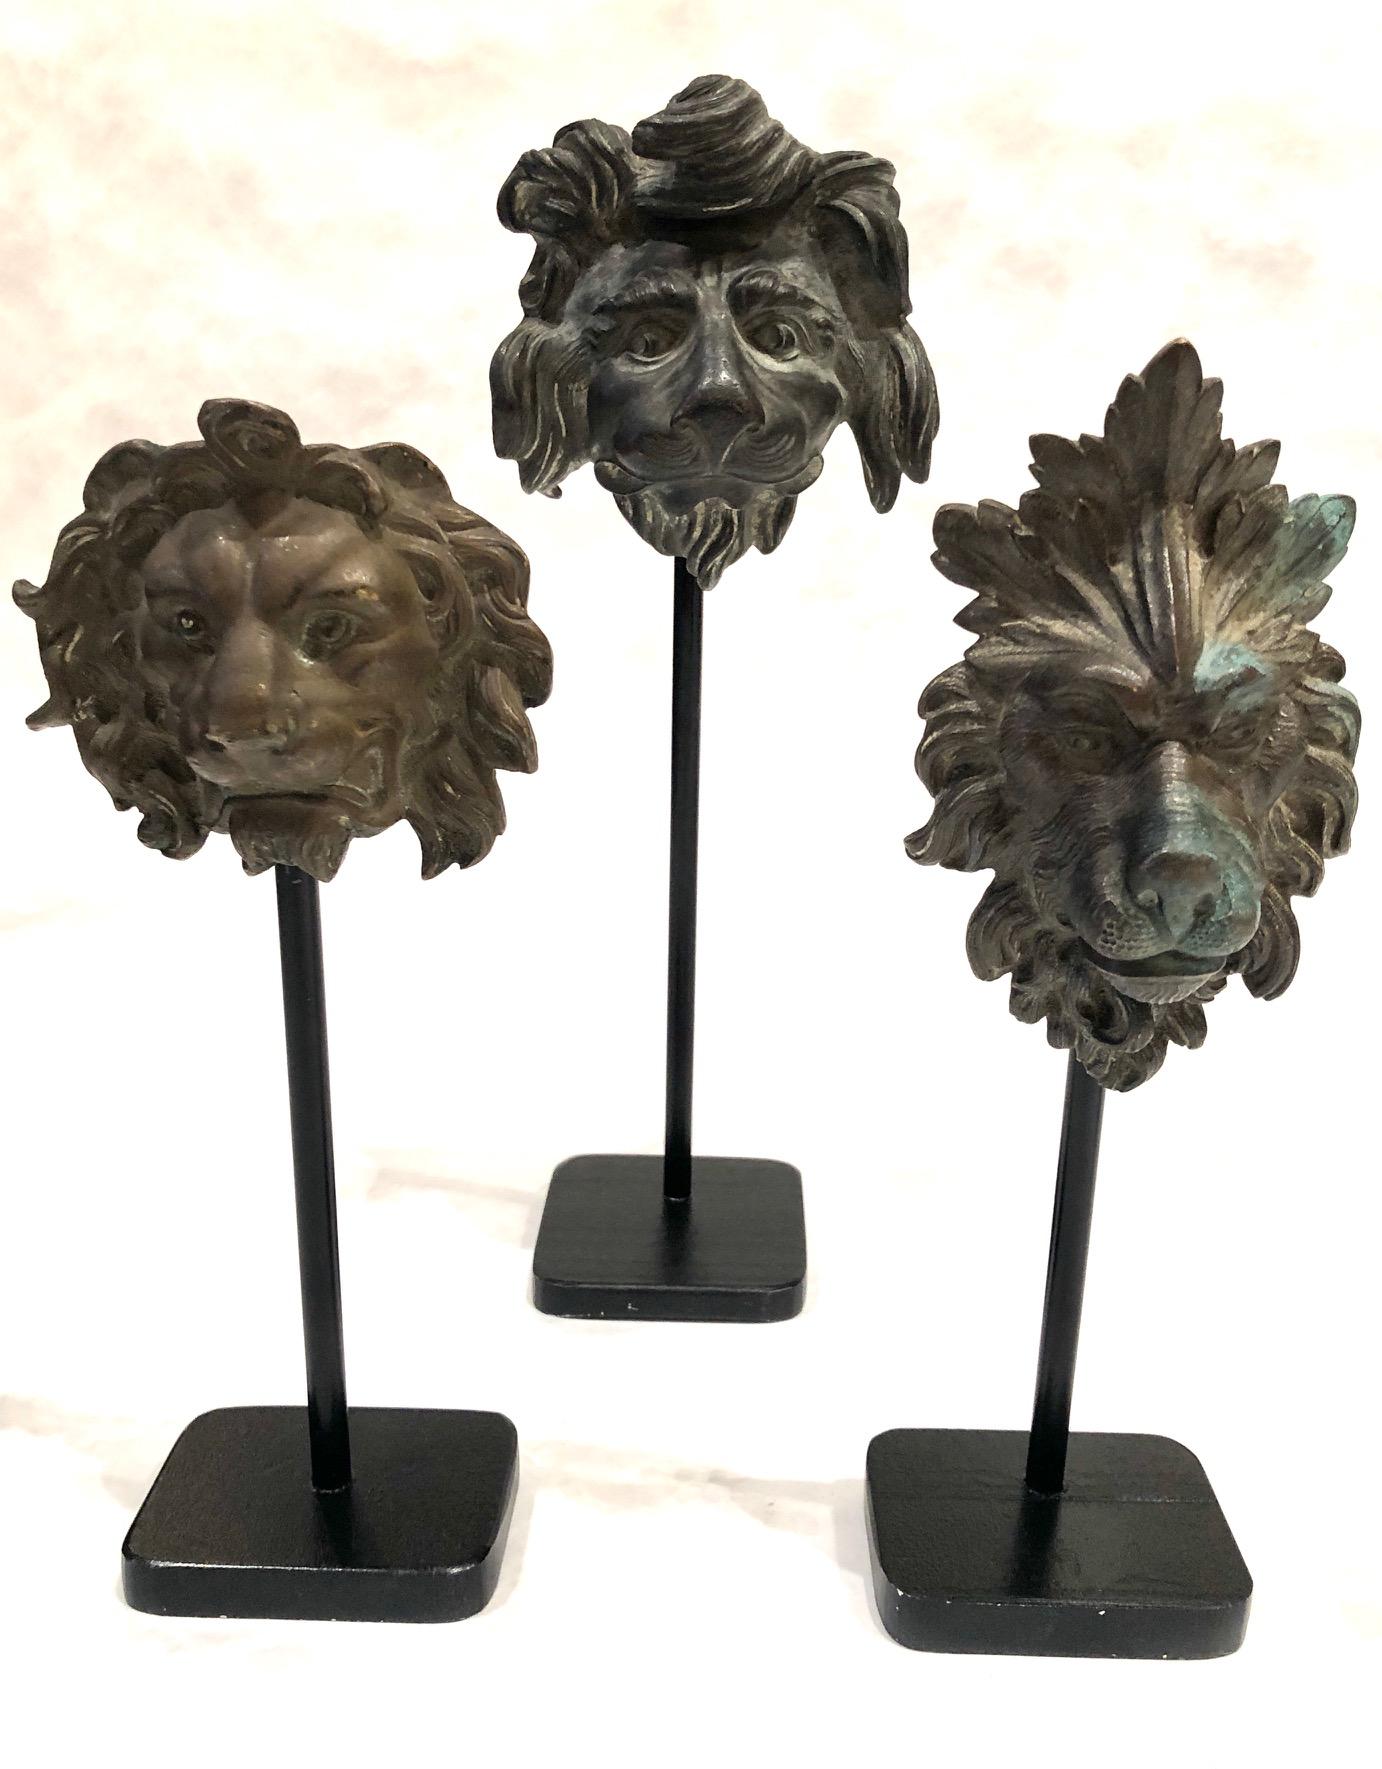 Bel et rare ensemble de 6 fragments de tête de lion en zinc, français vers 1850-1900
Le tout monté sur un support métallique. La mesure ci-dessous est la plus grande, toutes les mesures sont légèrement différentes
les hauteurs et les largeurs.